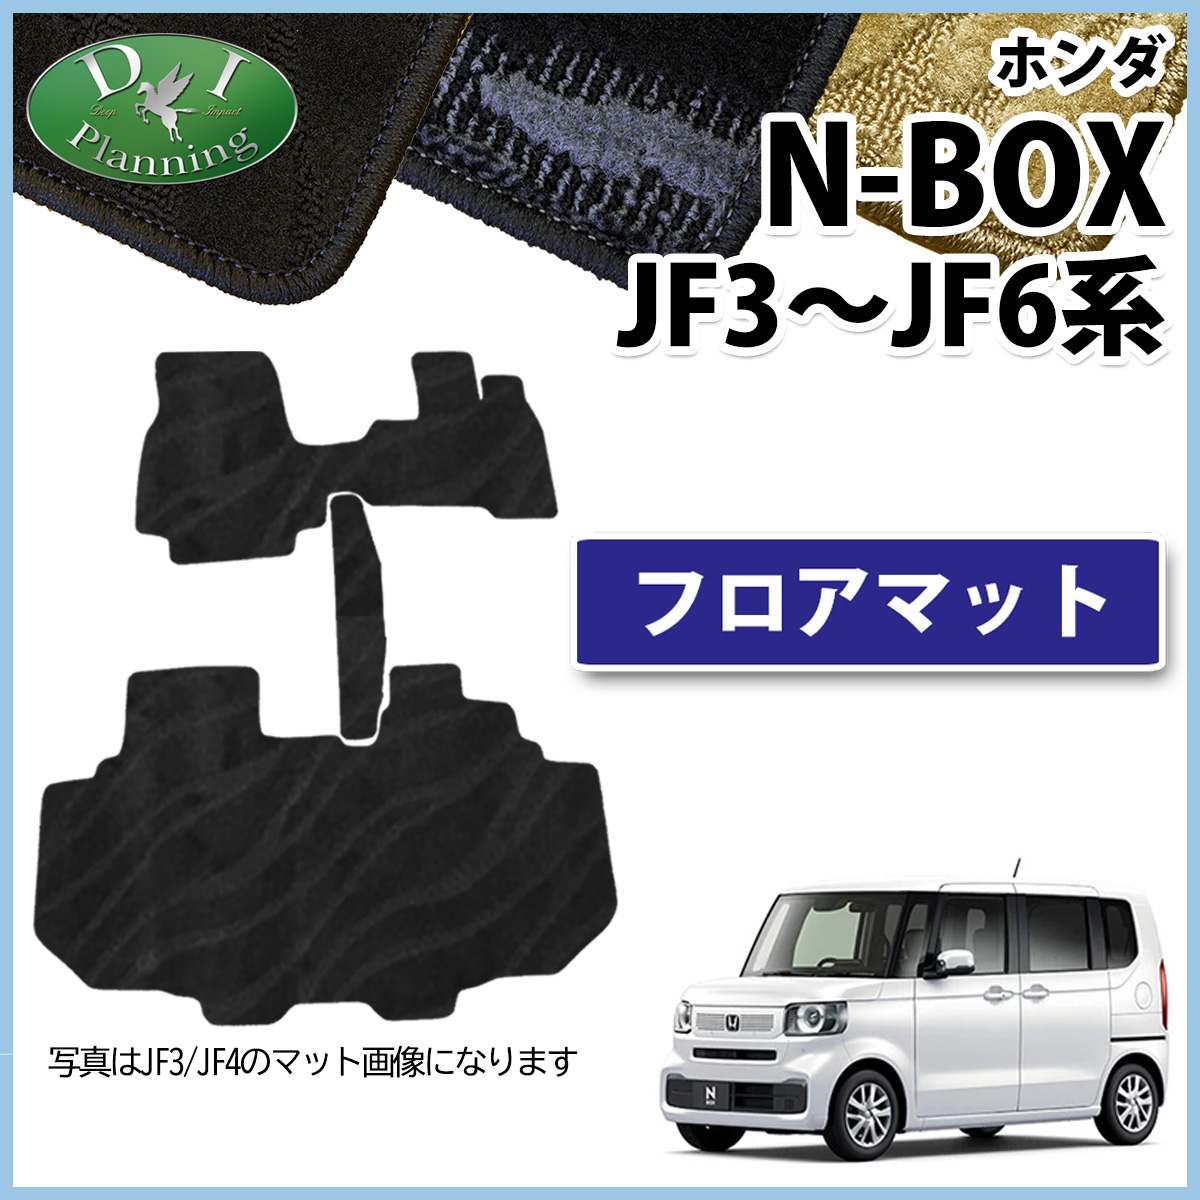 新型 NBOX NBOXカスタム Nボックス N-BOX JF5 JF6 JF3 JF4 フロアマット カーマット 織柄S 社外新品 自動車マット フロアーマット フロアシートカバー パーツ